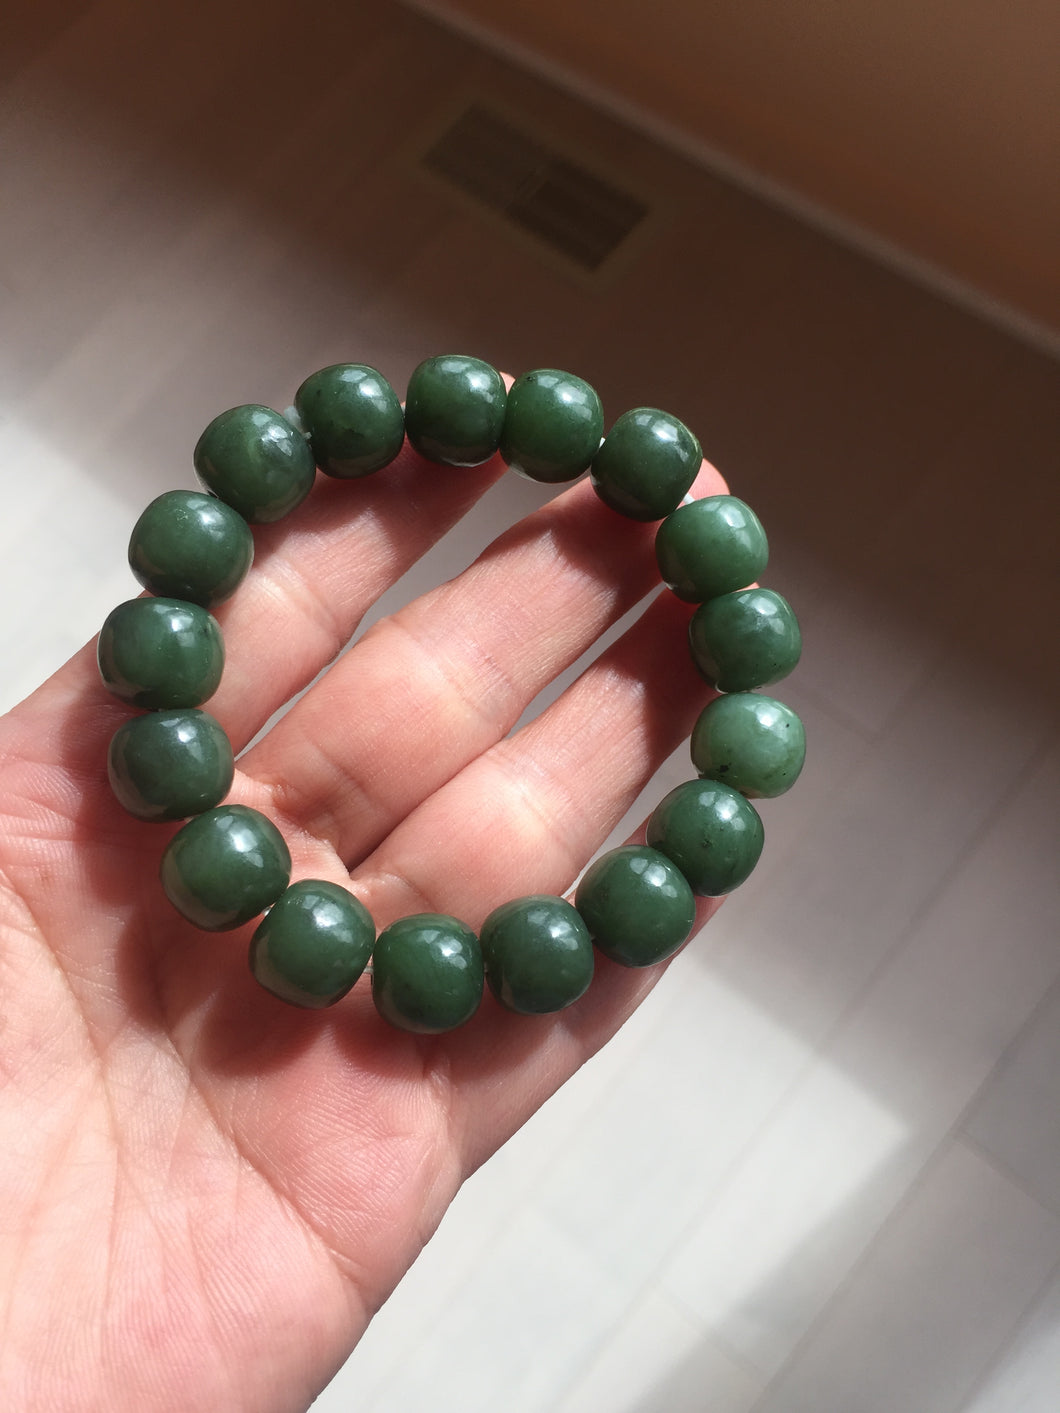 100% Natural 10.3/12mm dark green/black vintage style nephrite Hetian Jade (碧玉) bead bracelet HE90